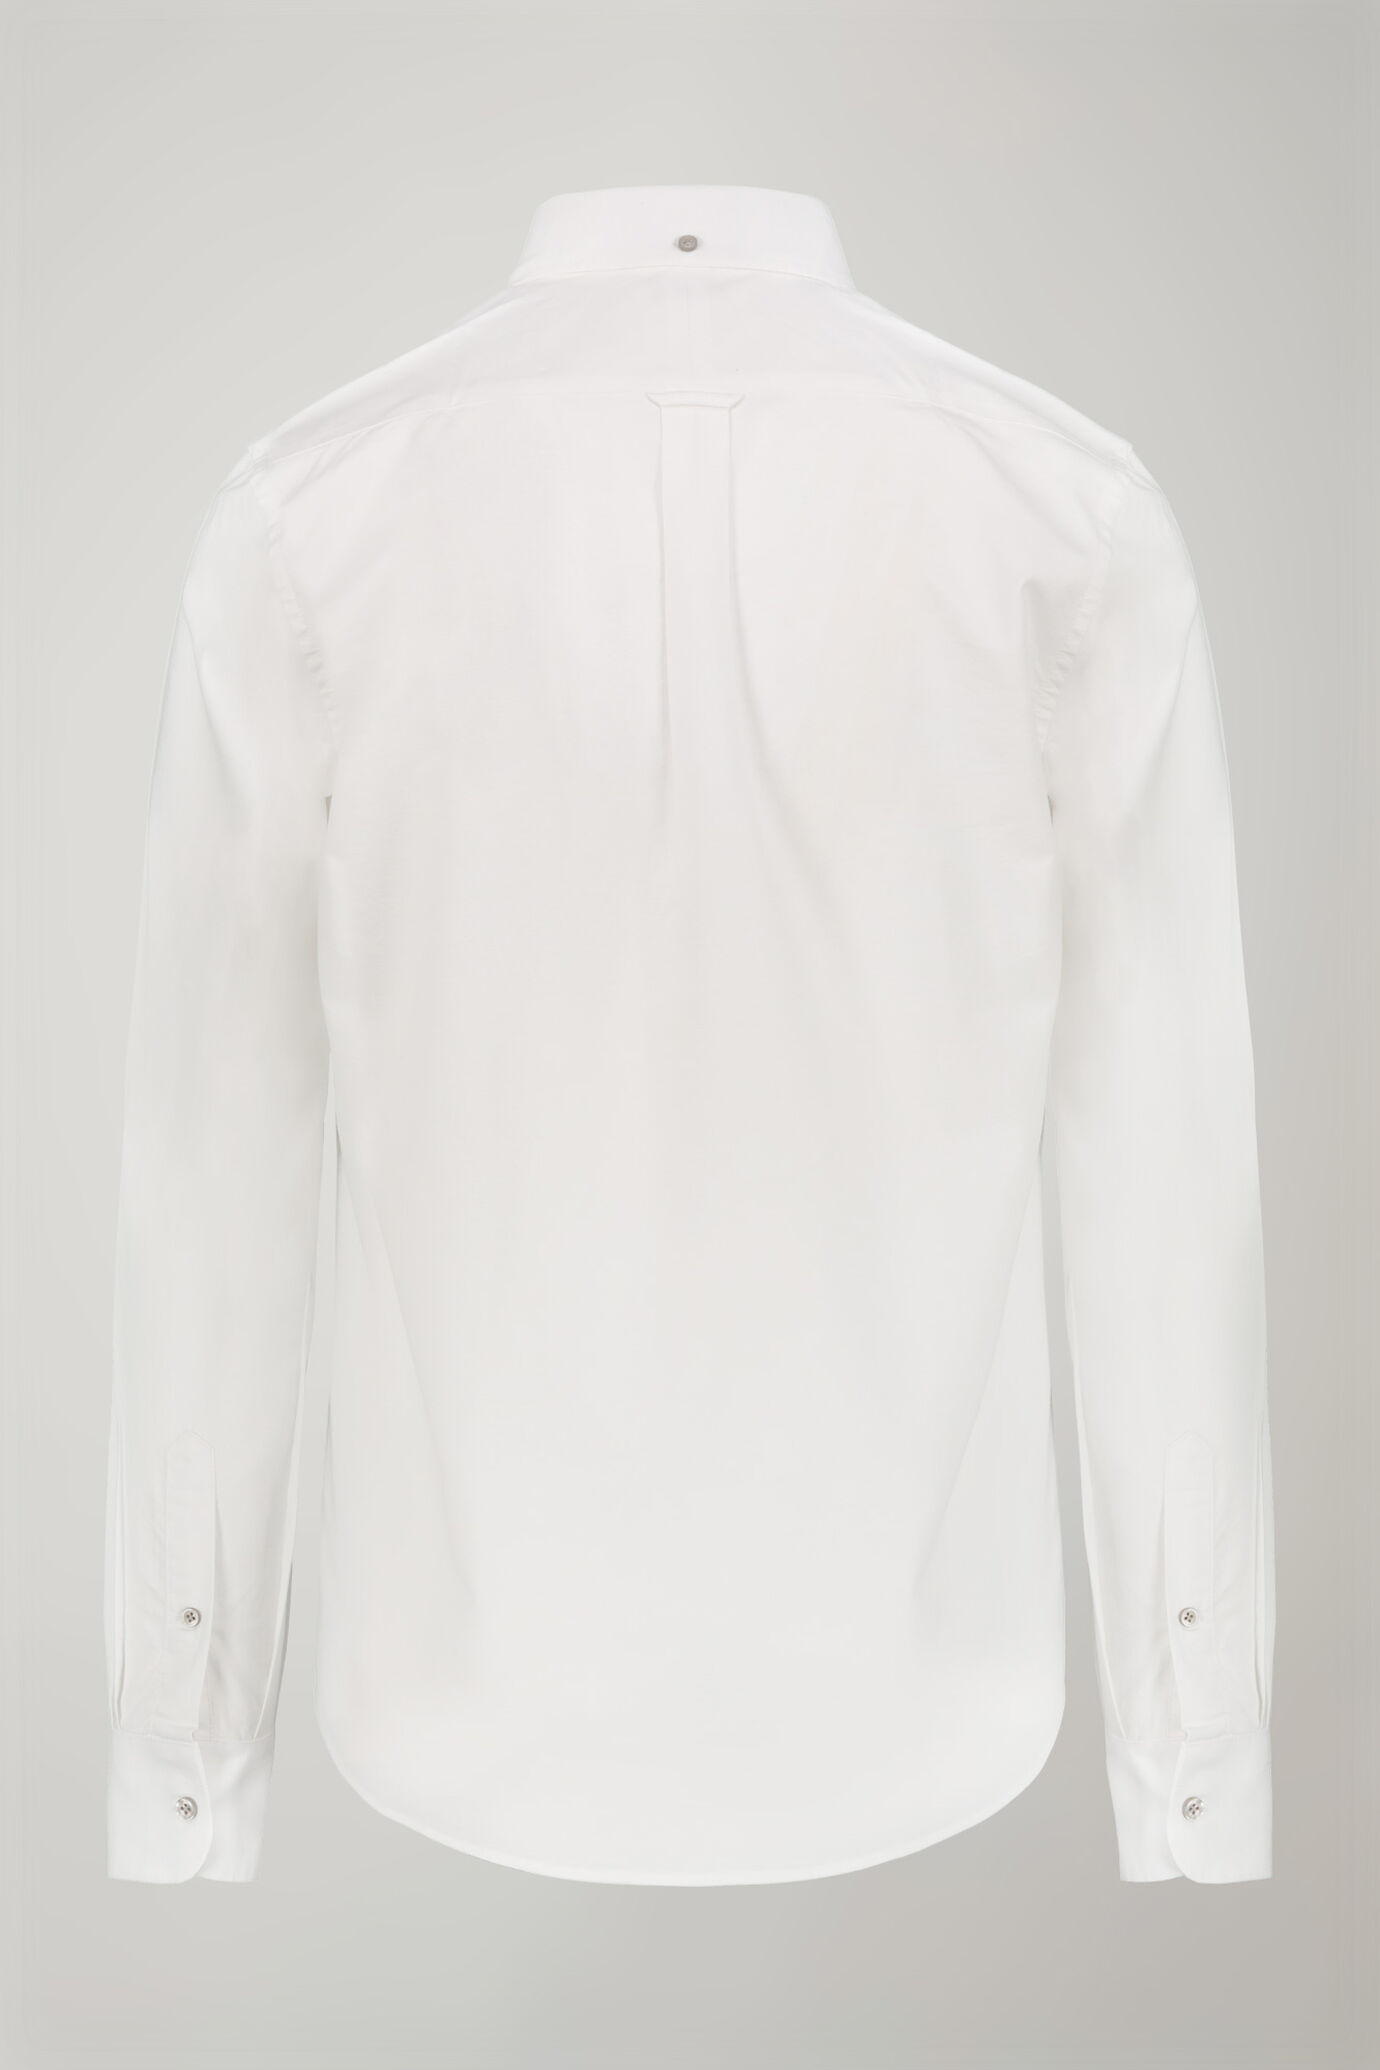 Camicia classica uomo collo button down tessuto Oxford rigato ultra leggero tinta unita comfort fit image number 6